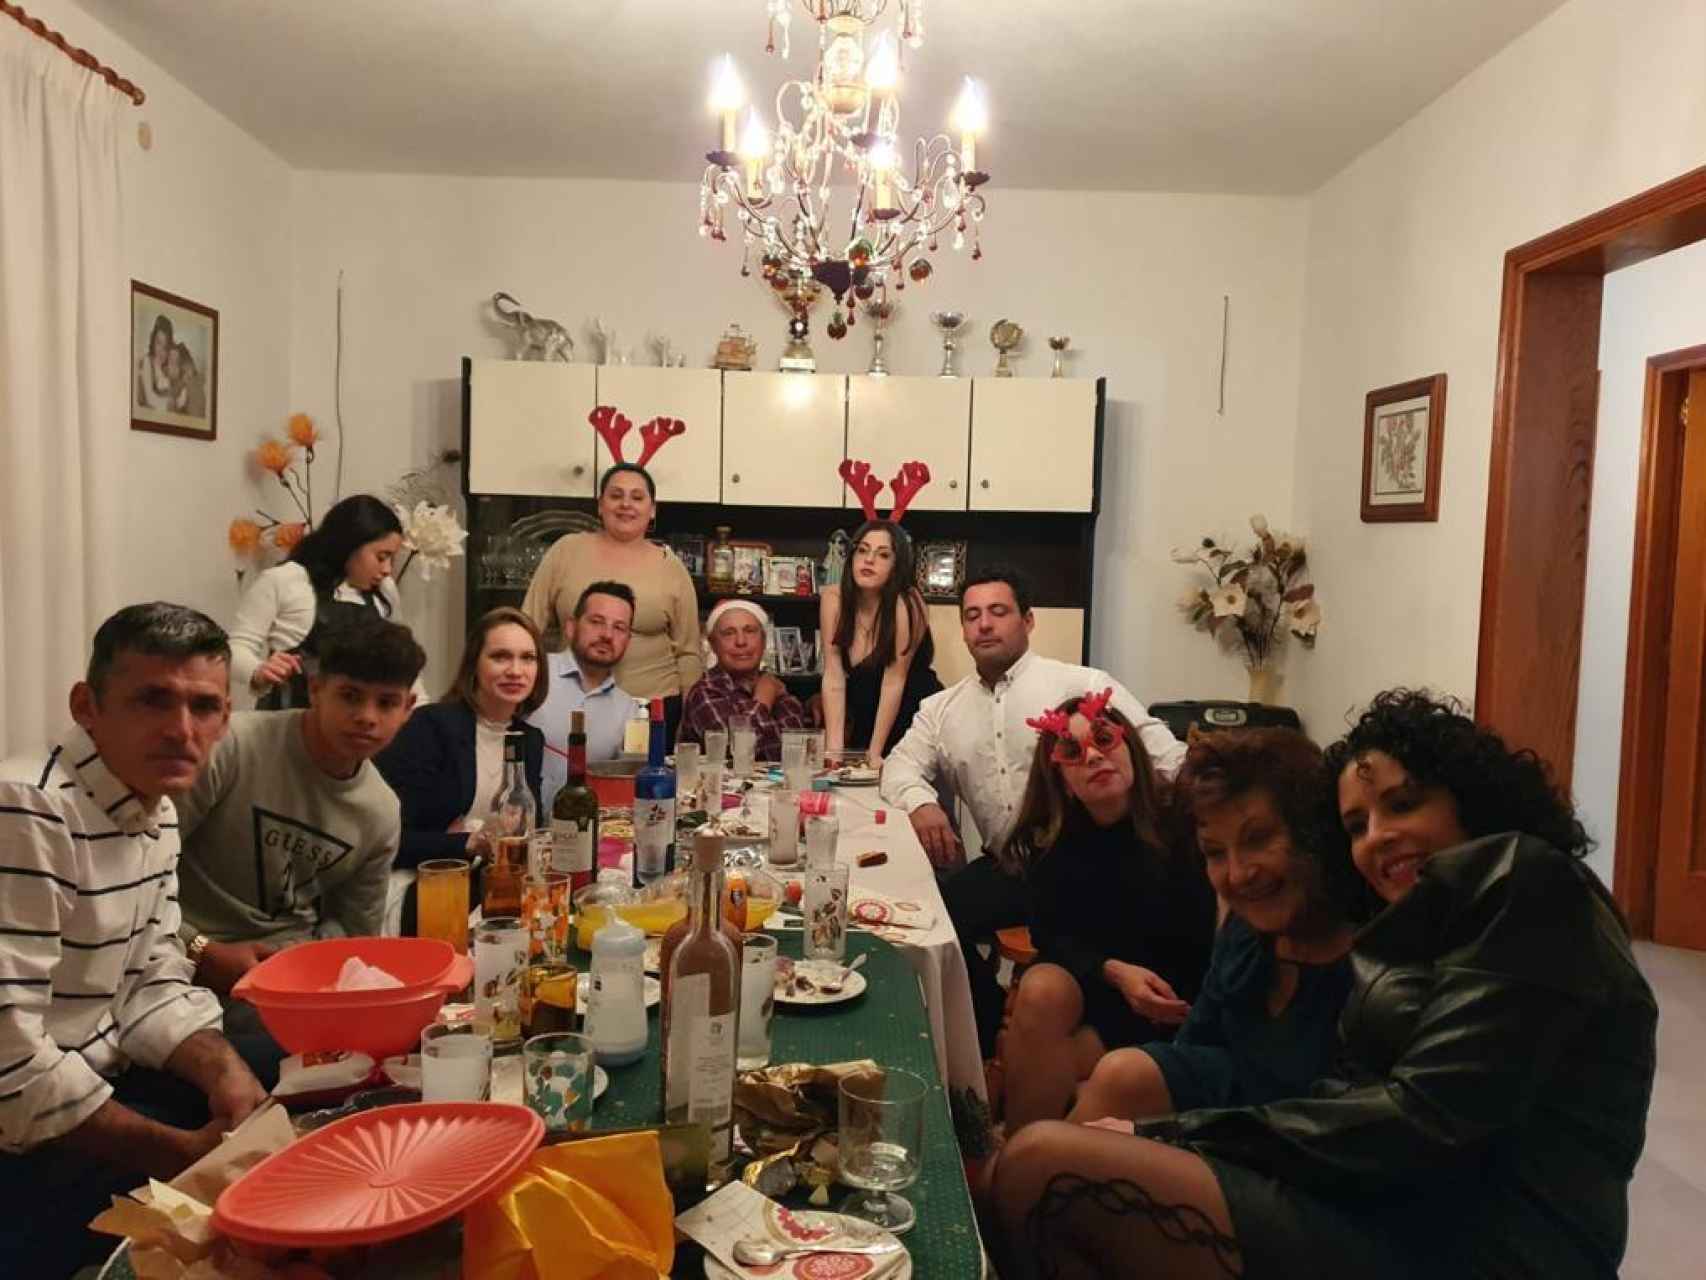 La familia de Roberto Leal (al fondo, con barba), la última Navidad en la casa de sus padres, que ya no existe.